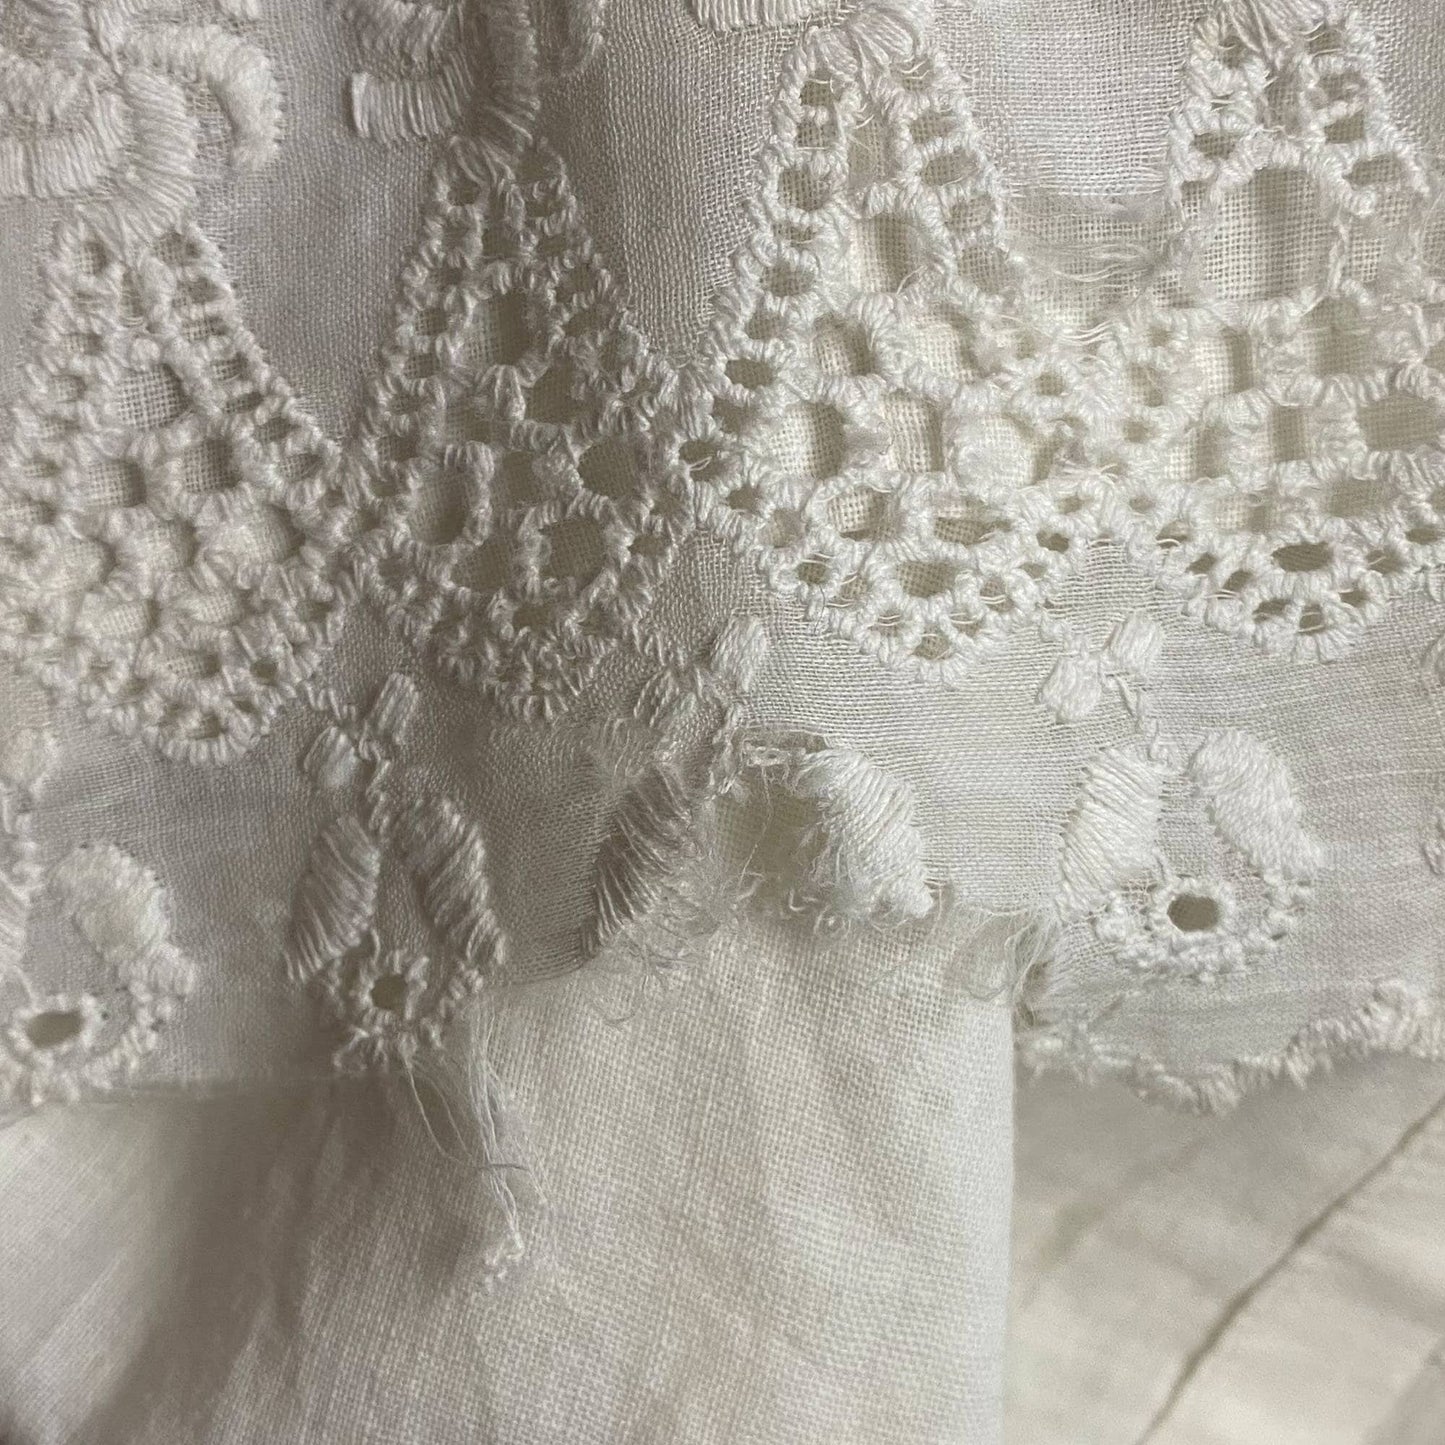 Vintage Petticoat Cotton White Voile Lace Long Victorian Pioneer Era Antique Skirt